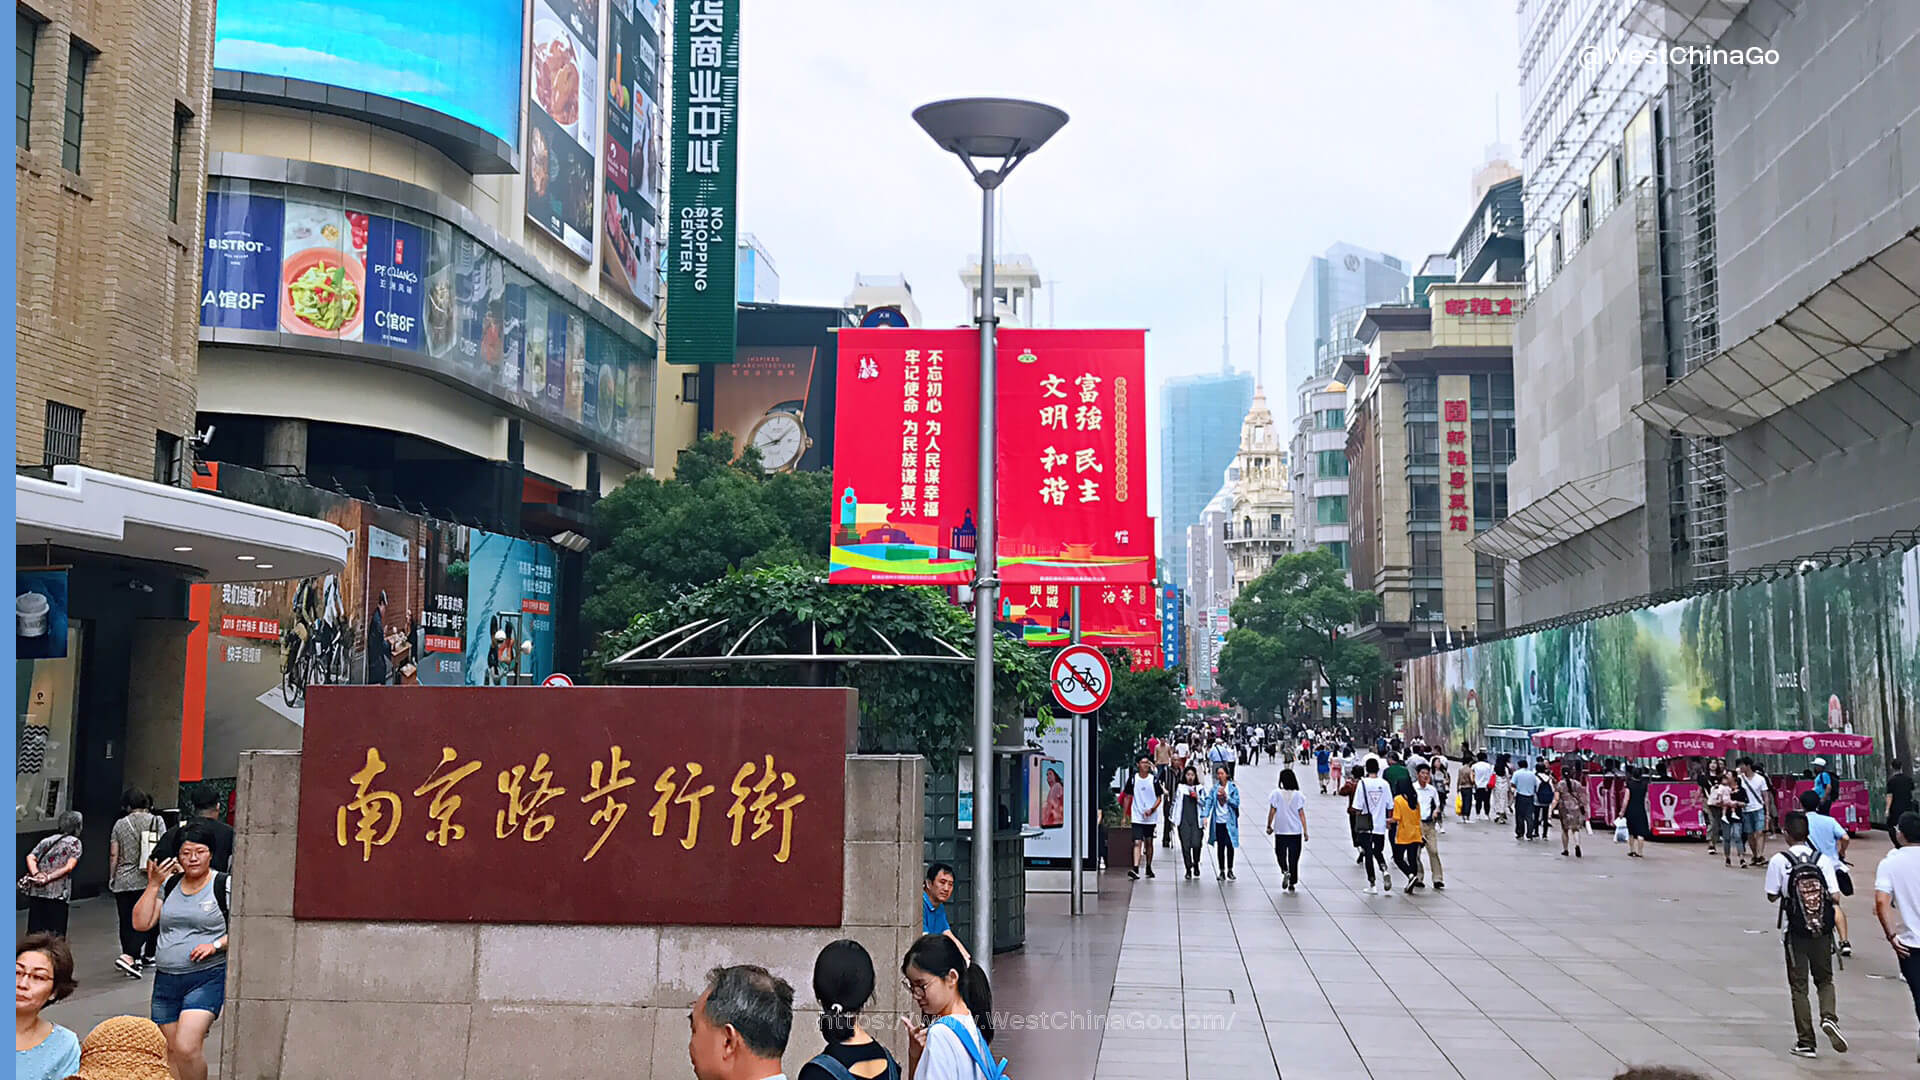 Shanghai Nanjing Road